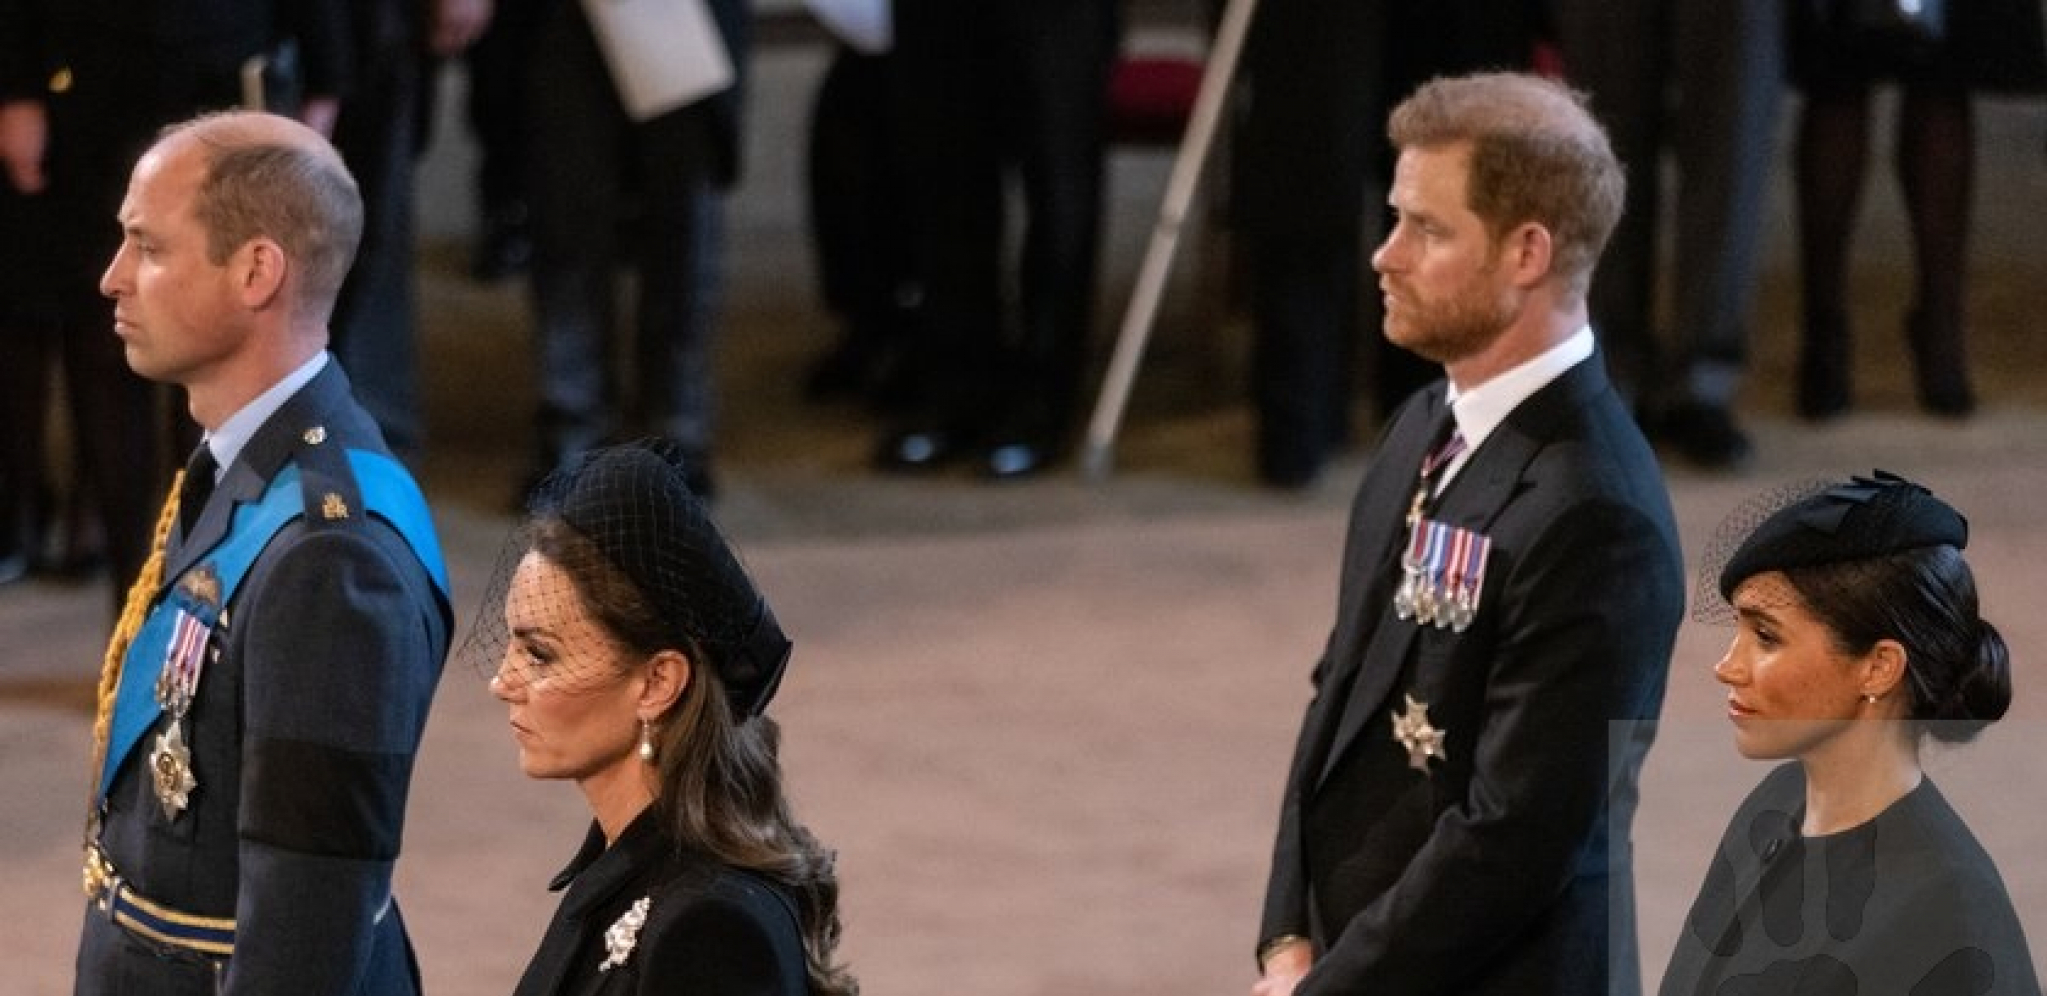 SAMO U BRITANIJI! Dvostruki seksualni napad tokom posmrtne ceremonije kraljice Elizabete!